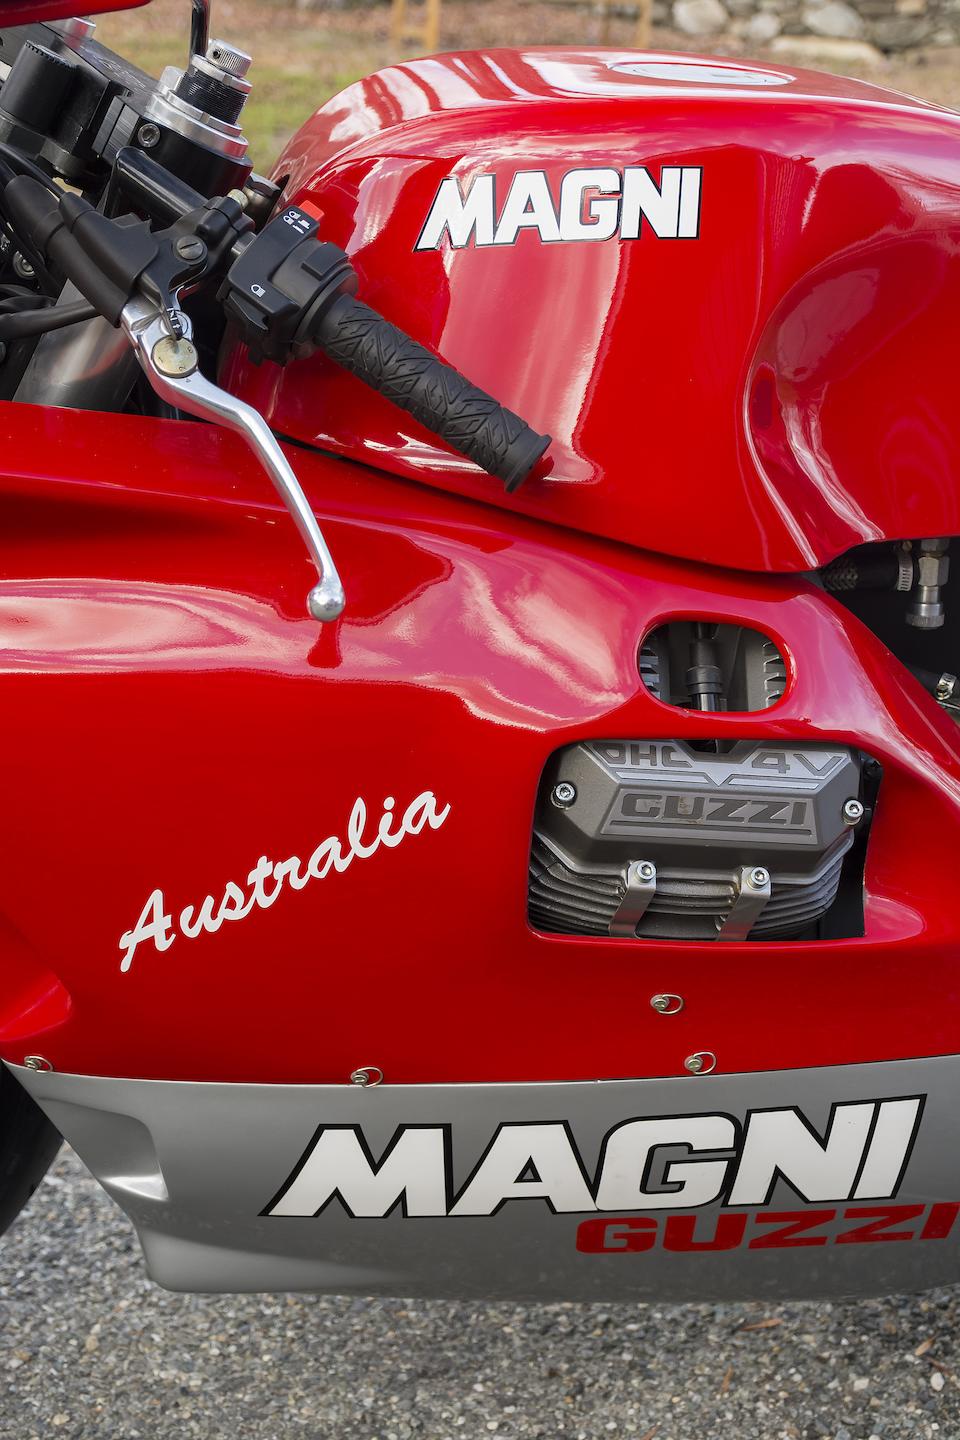 One of only 50 made,1998 Magni Australia 992cc Moto Guzzi Frame no. ZA9G5AKL1VSF69099